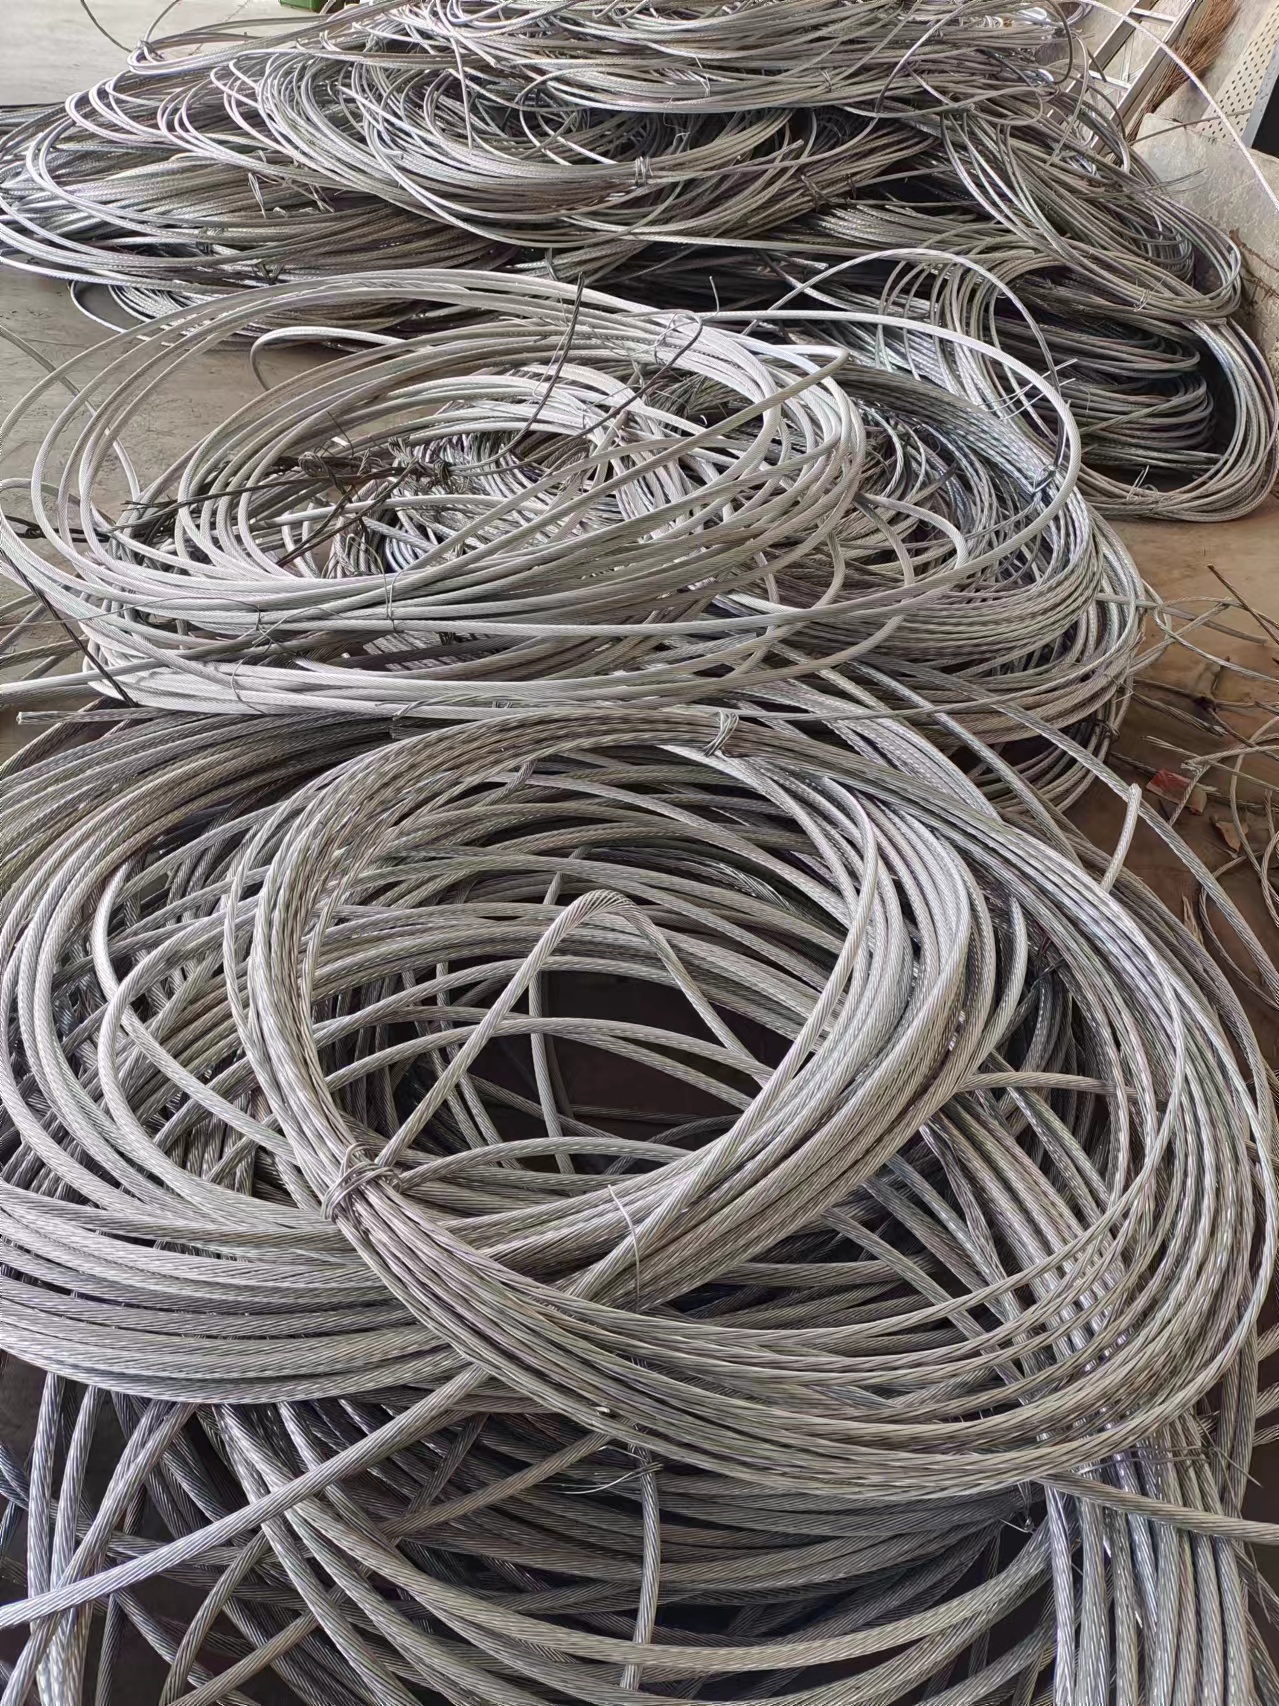 各种电线电缆回收 二手电缆回收当场结算